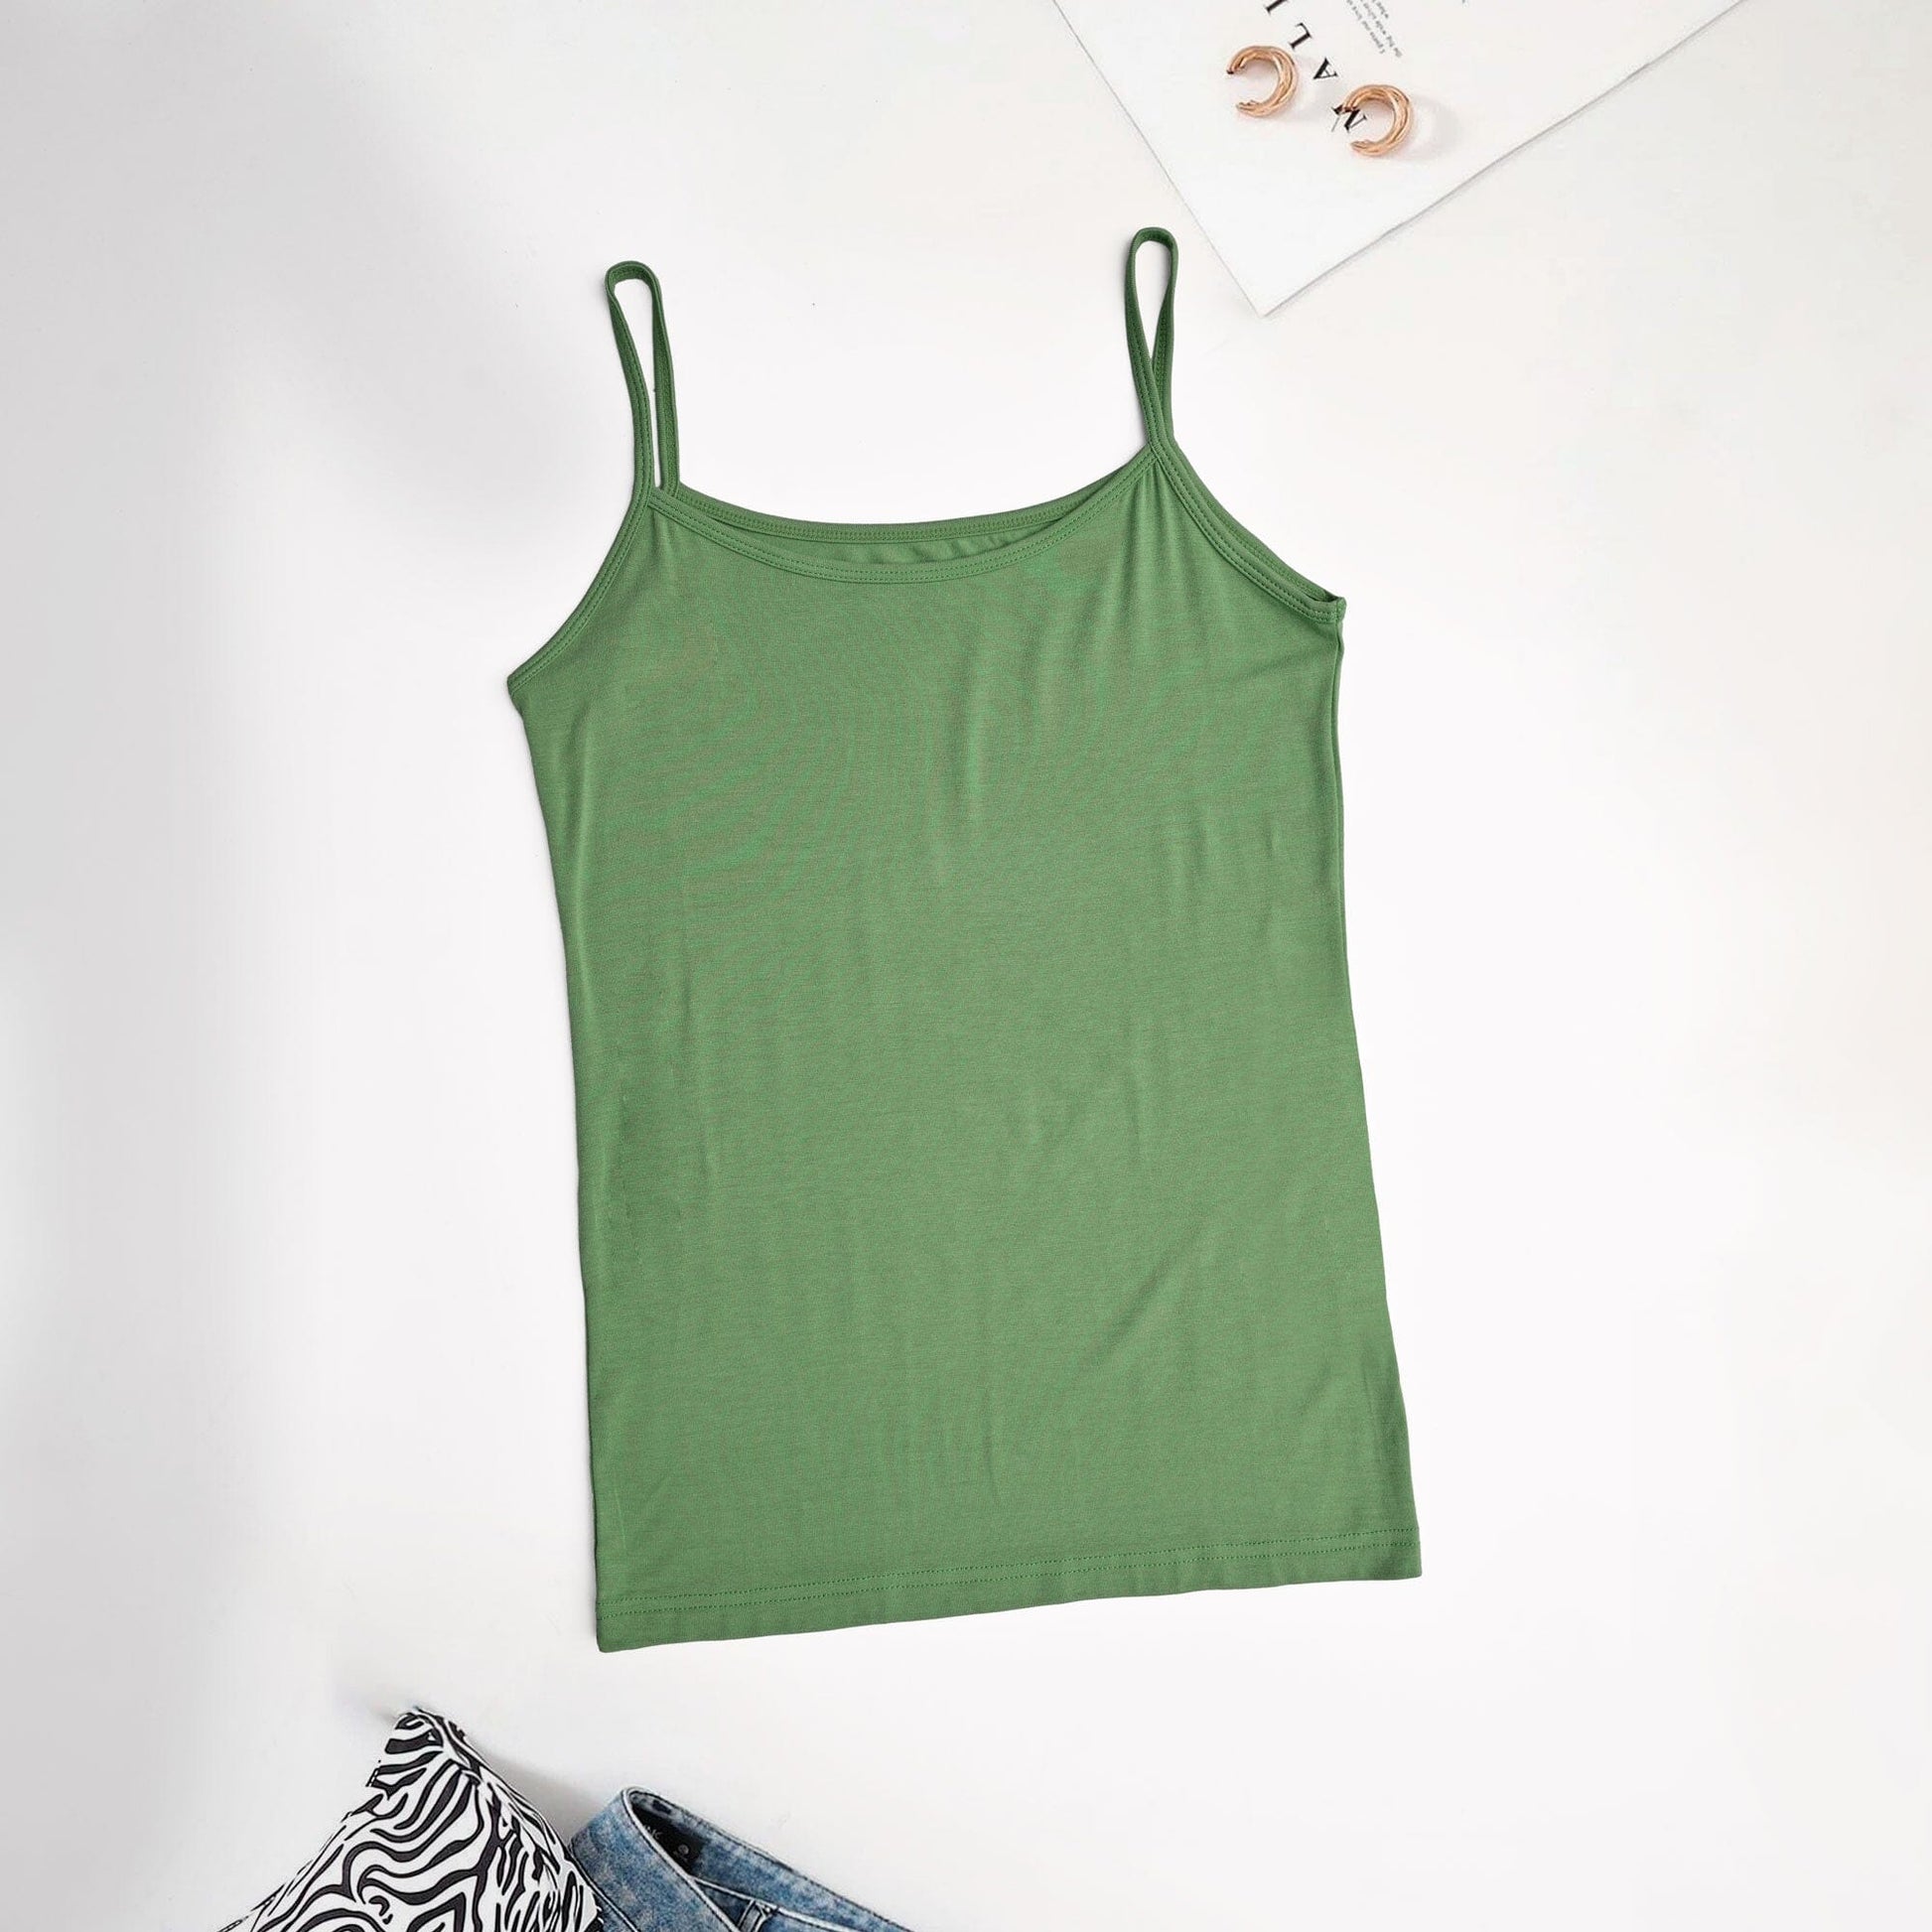 Women's Nicosia Comfortable Tank Top Women's Tee Shirt SRL Bottle Green M 